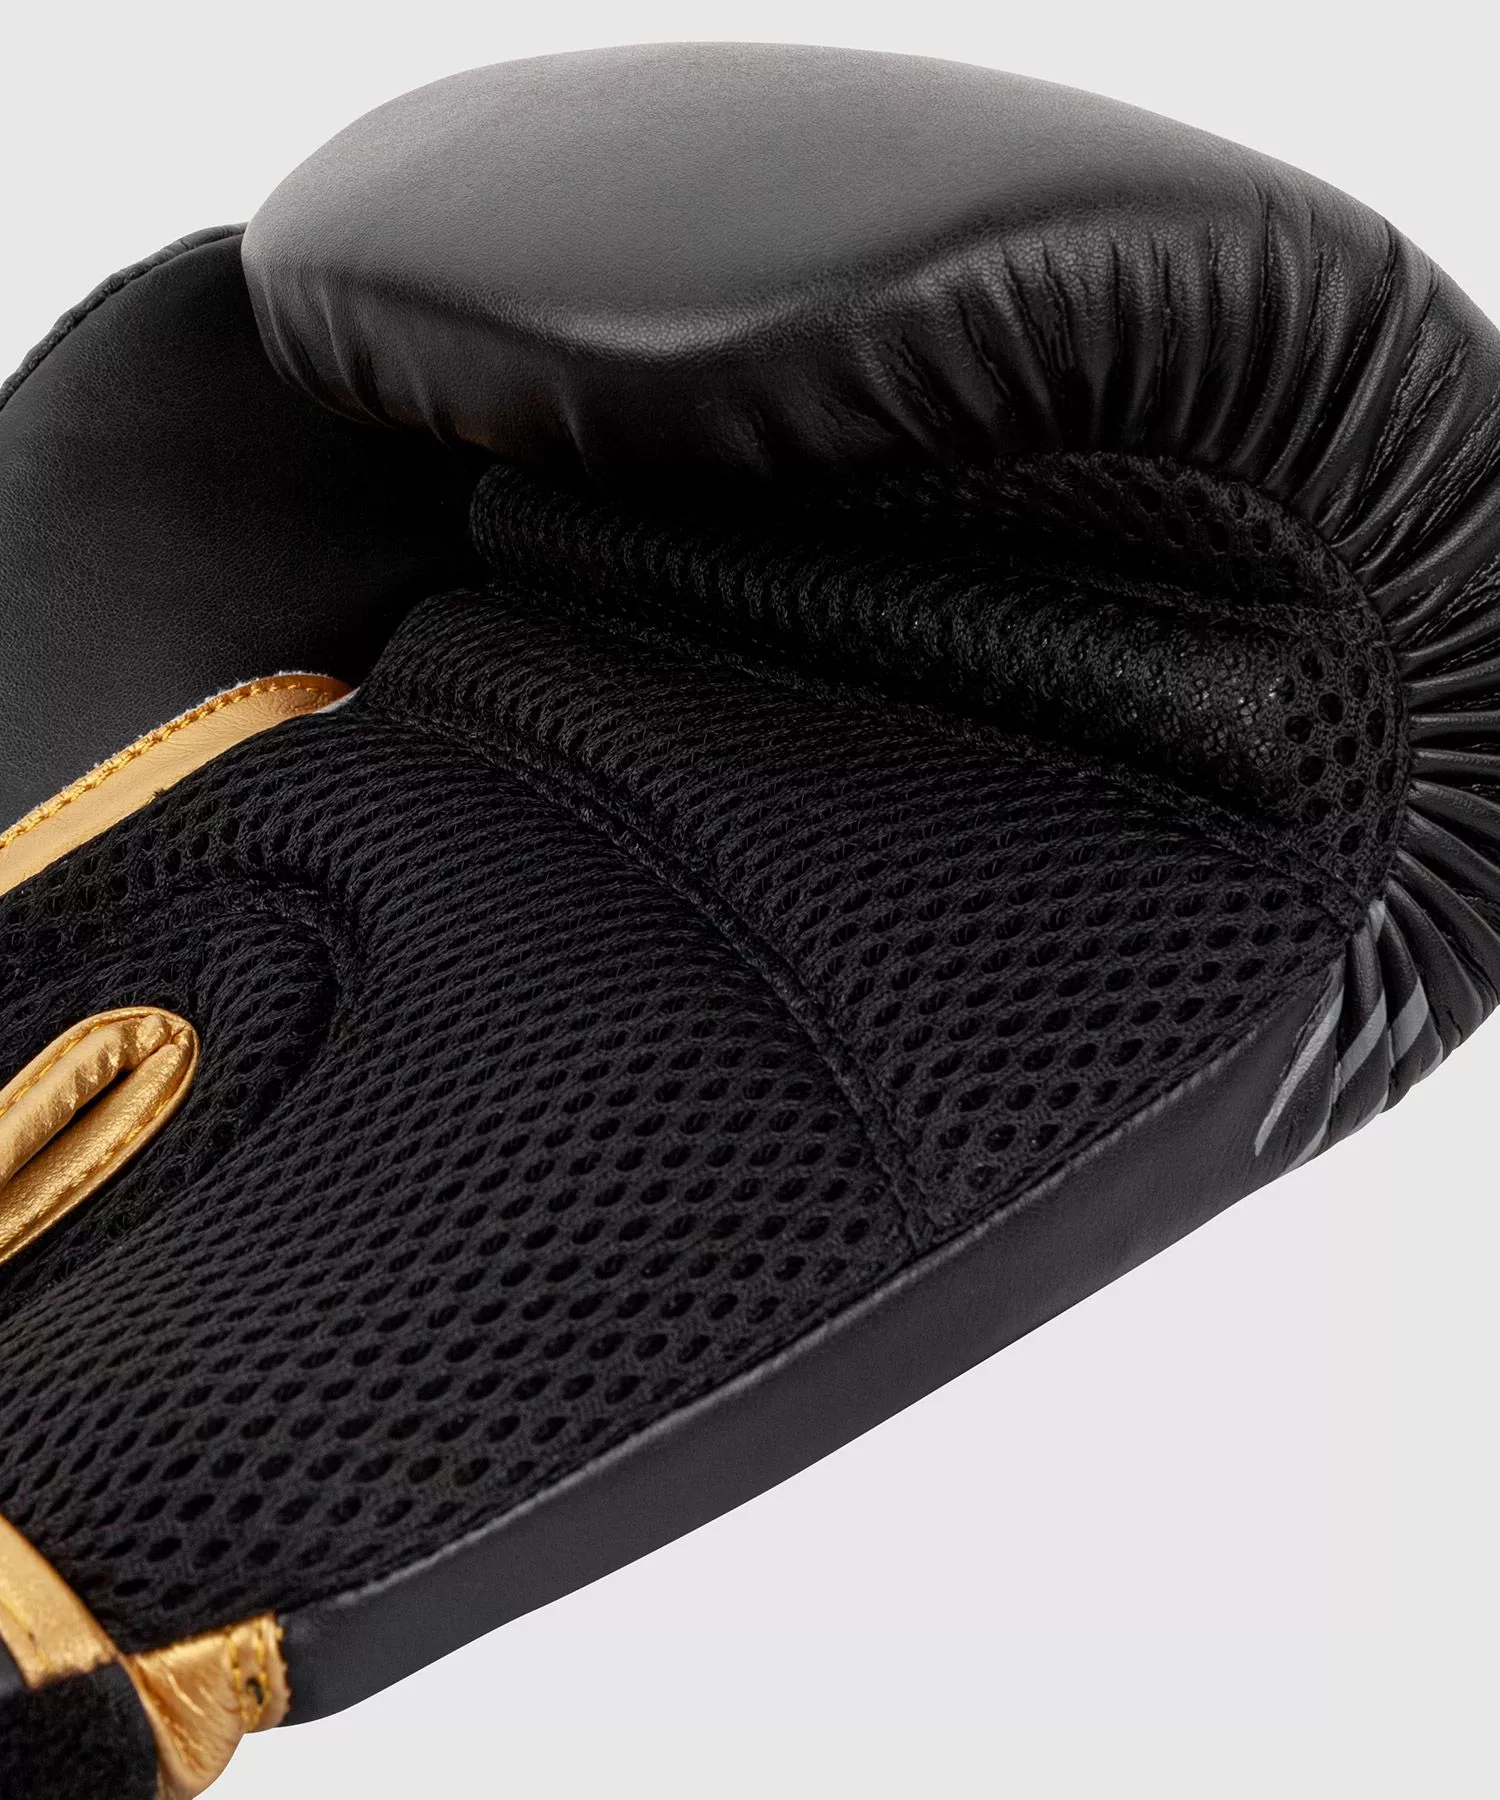 Перчатки Ringhorns Charger MX Boxing Gloves 10 унций